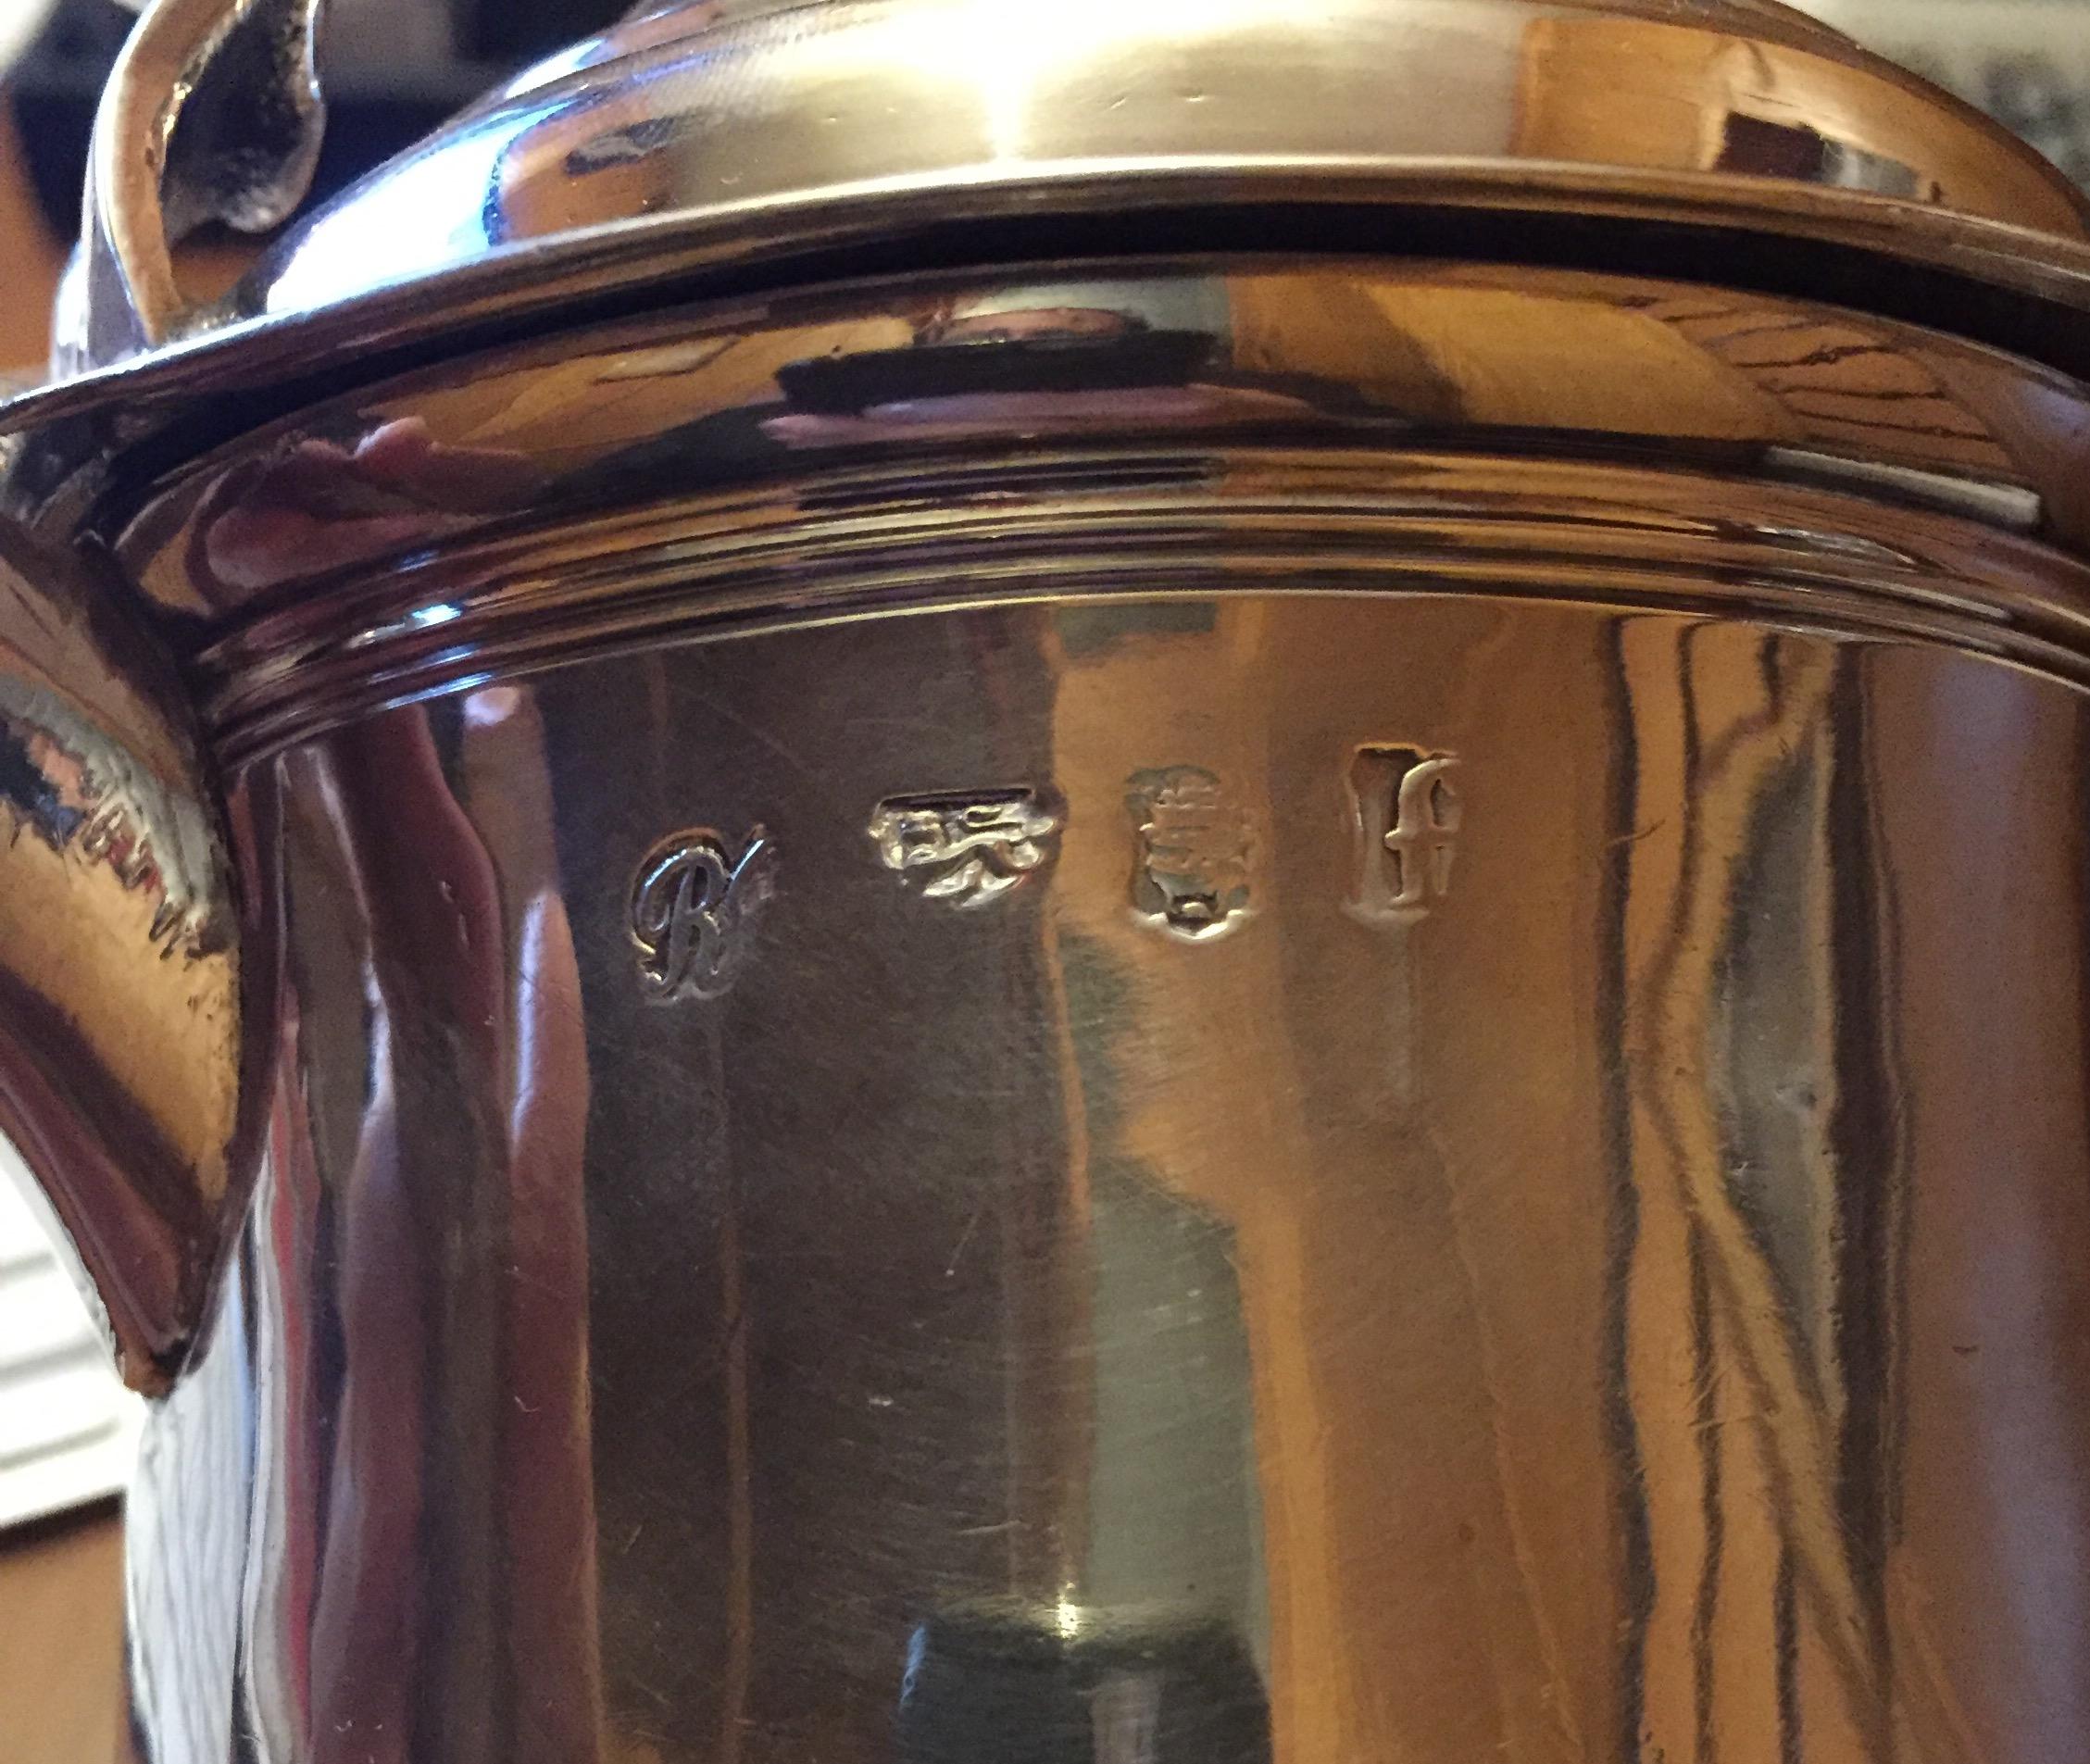 Georgianischer Silberkrug, Marke von Robert Brown aus London 1741, oben und auf der rechten Seite mit den typischen Zeichen des englischen Silbers versehen, dem Löwenkopf der Stadt London und dem Buchstaben f, was bedeutet, dass er zu diesem